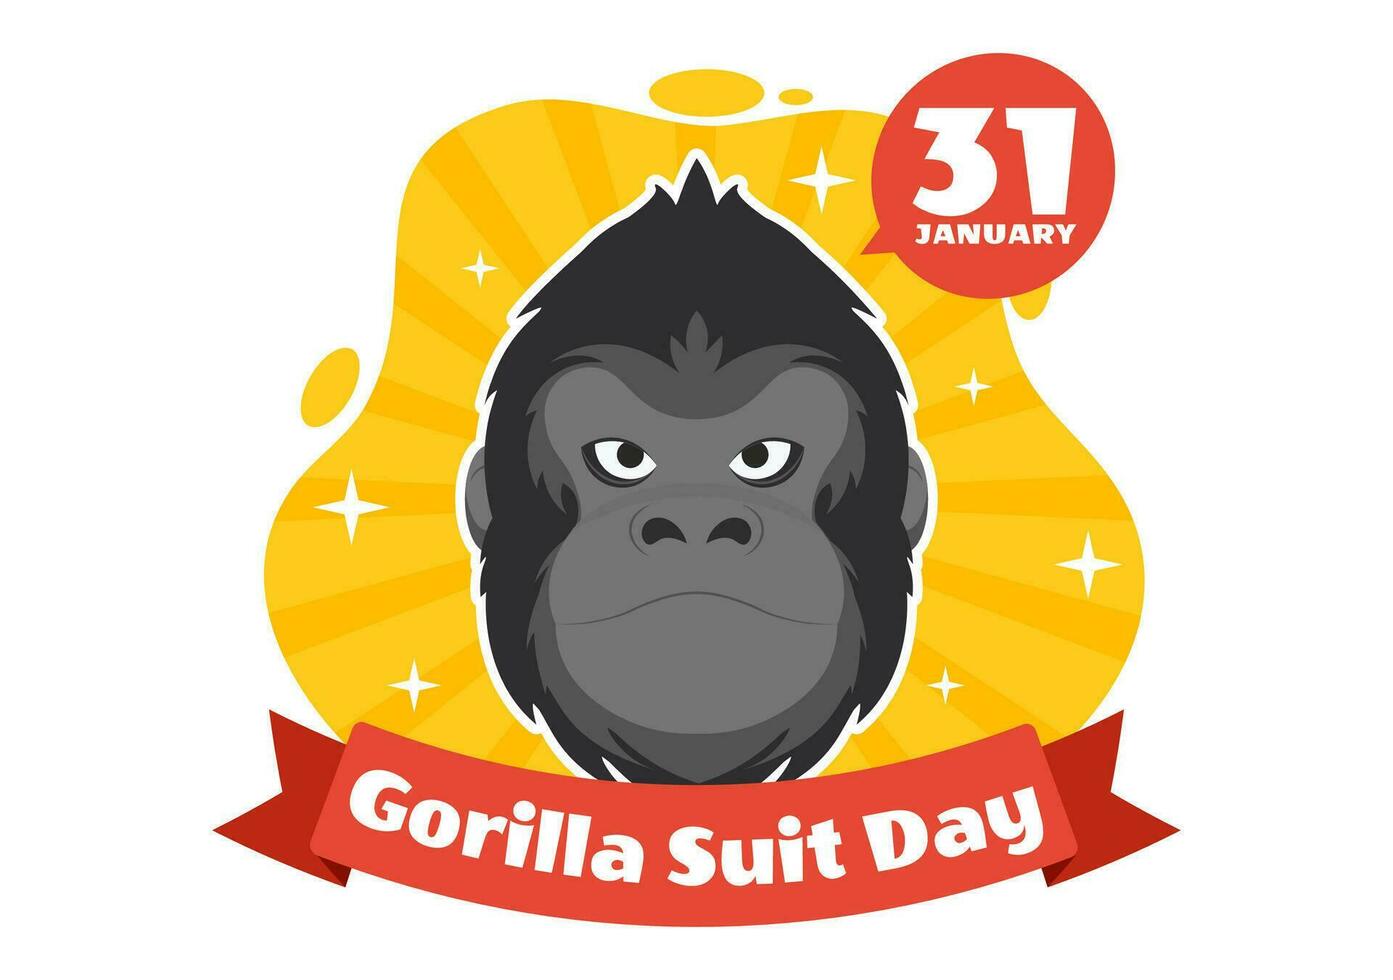 nationell gorilla kostym dag vektor illustration på 31 januari med har de huvud av en gorillor är klädd ordentligt i en kostymer och värld Karta i bakgrund